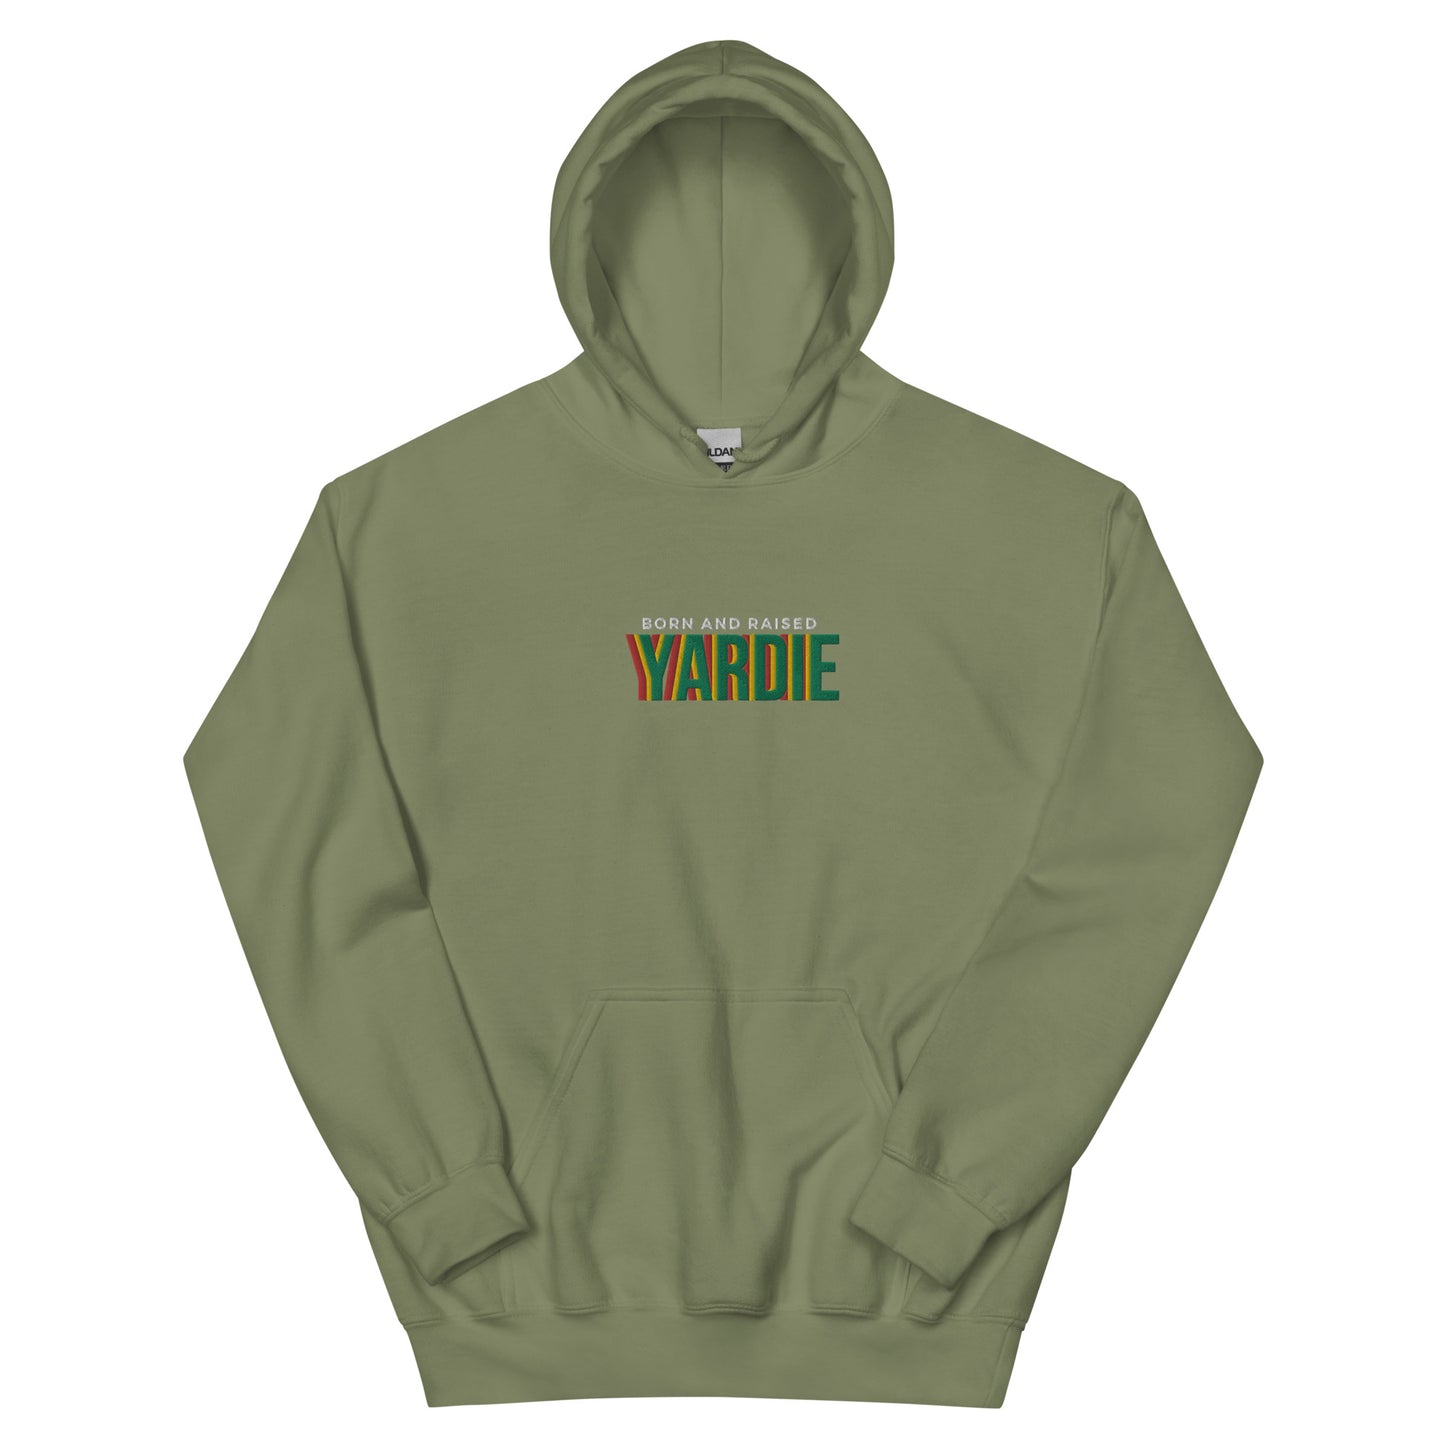 Yardie - Unisex Hoodie